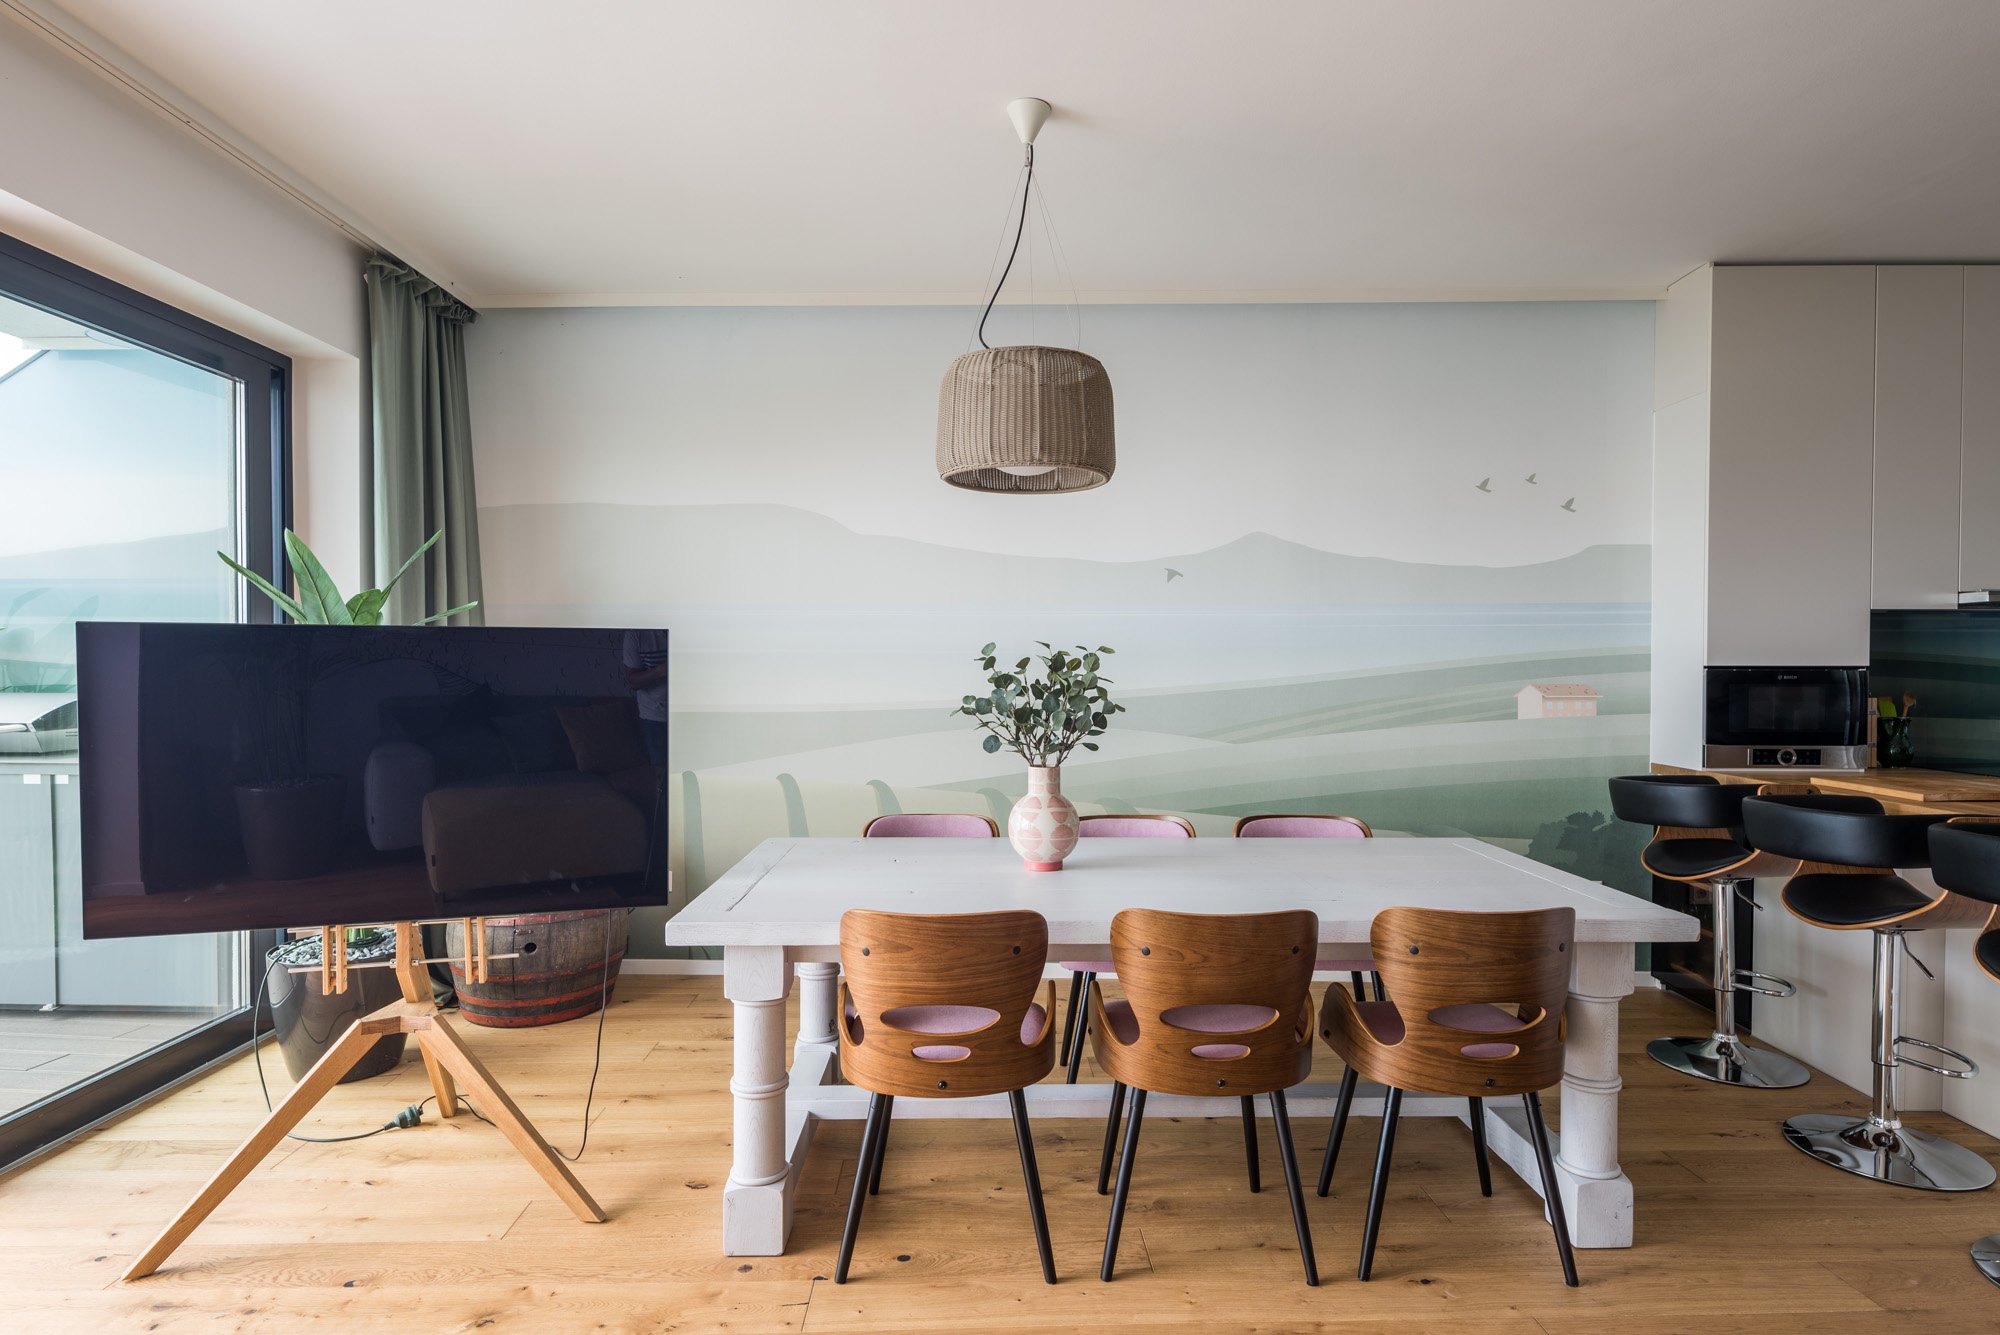 Szintén Béres Dóra tervezte és a Wall Concept kivitelezte, egyedi tapétát kapott a meglévő bútorokkal berendezett étkező, míg a beépített konyhabútor és konyhai gépek az újonnan átadott lakás tartozékai.